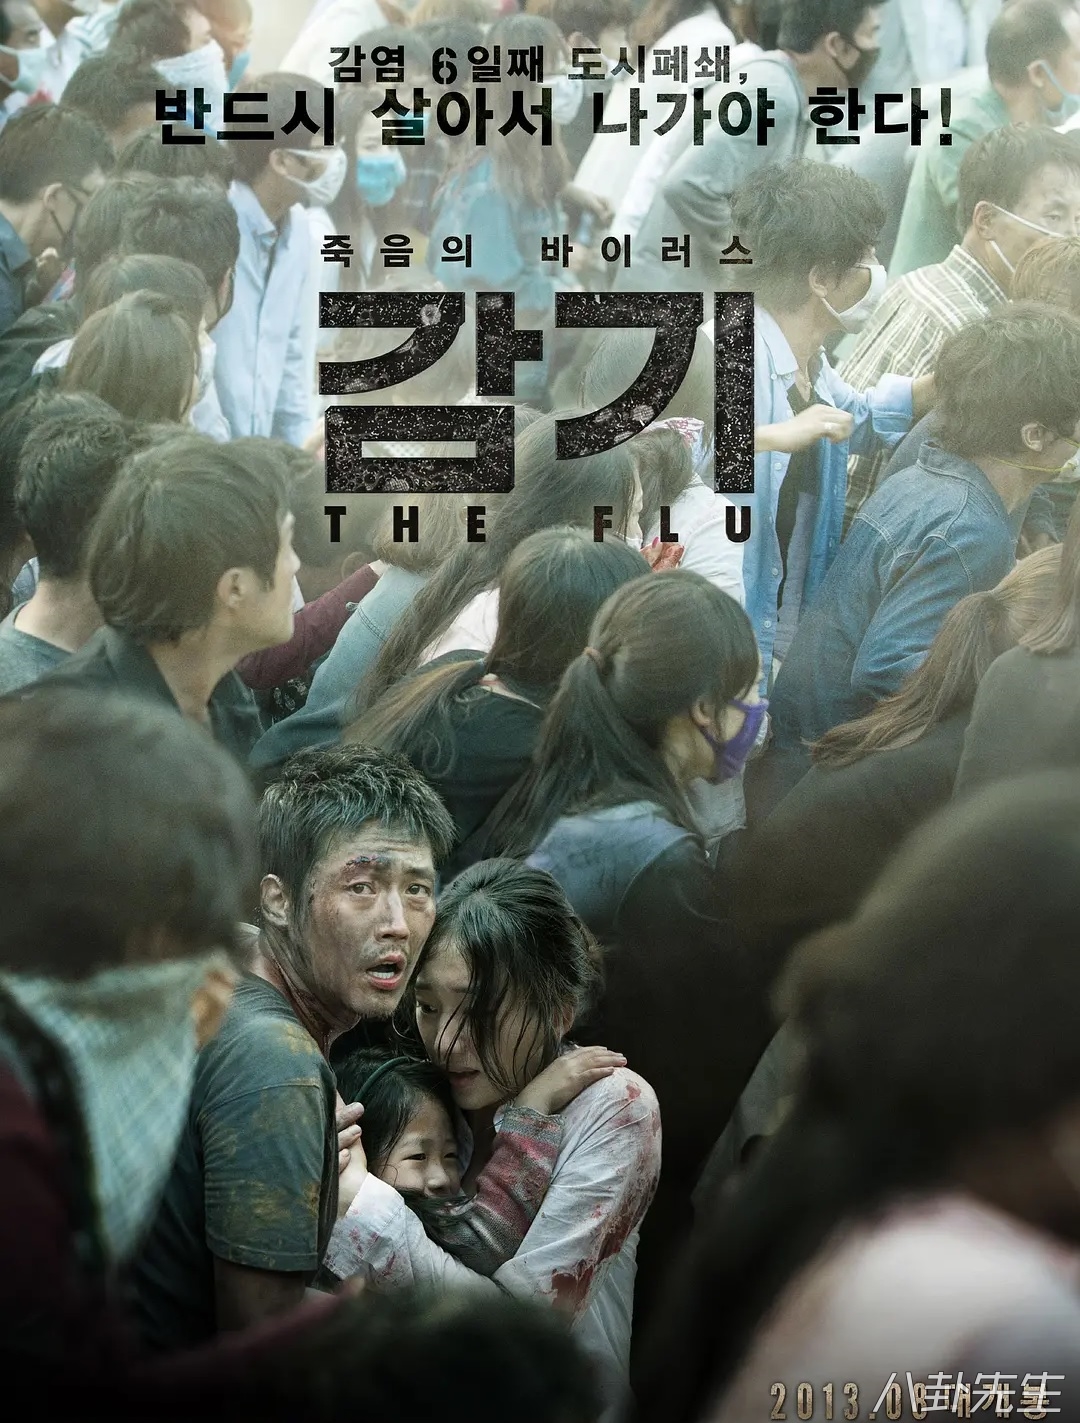 韩国电影《流感》过誉了:人物前后矛盾,逻辑bug太多